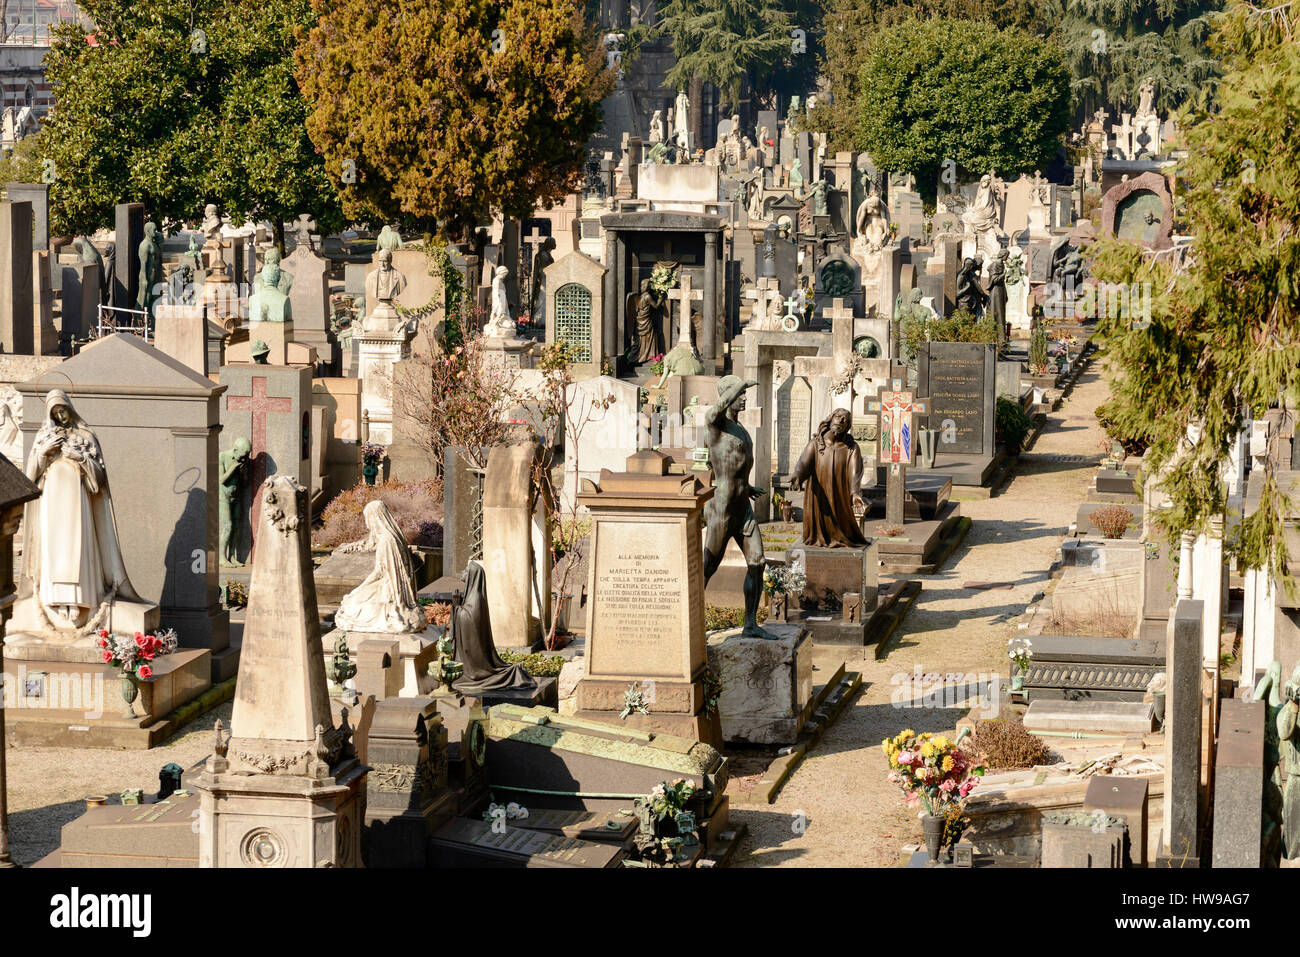 Verkürzung der eine Menge von Statuen und Friedhöfe im Bereich bei großen monumentalen Friedhof in der Stadt, im hellen Licht in Mailand, Lombard Spätwinter erschossen Stockfoto